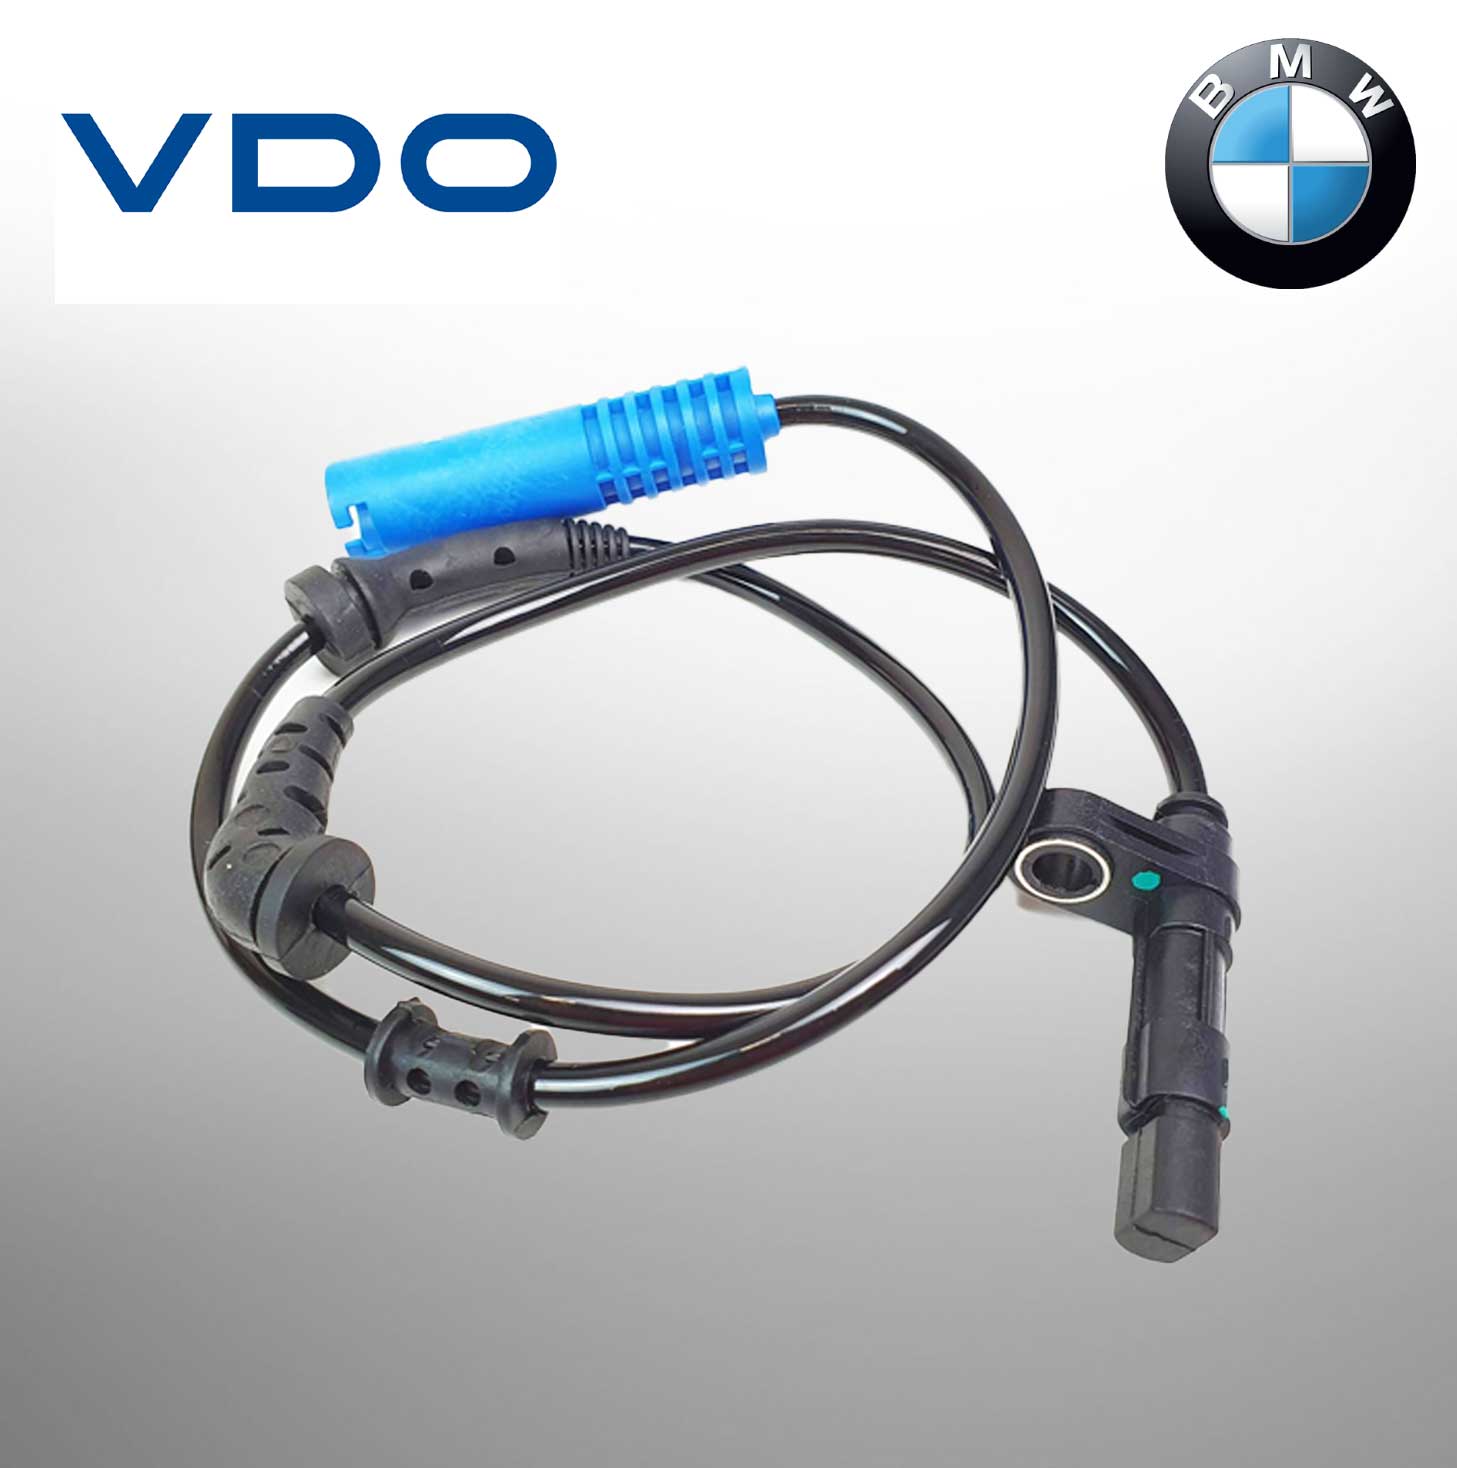 VDO SPEED SENSOR For BMW 34526756373